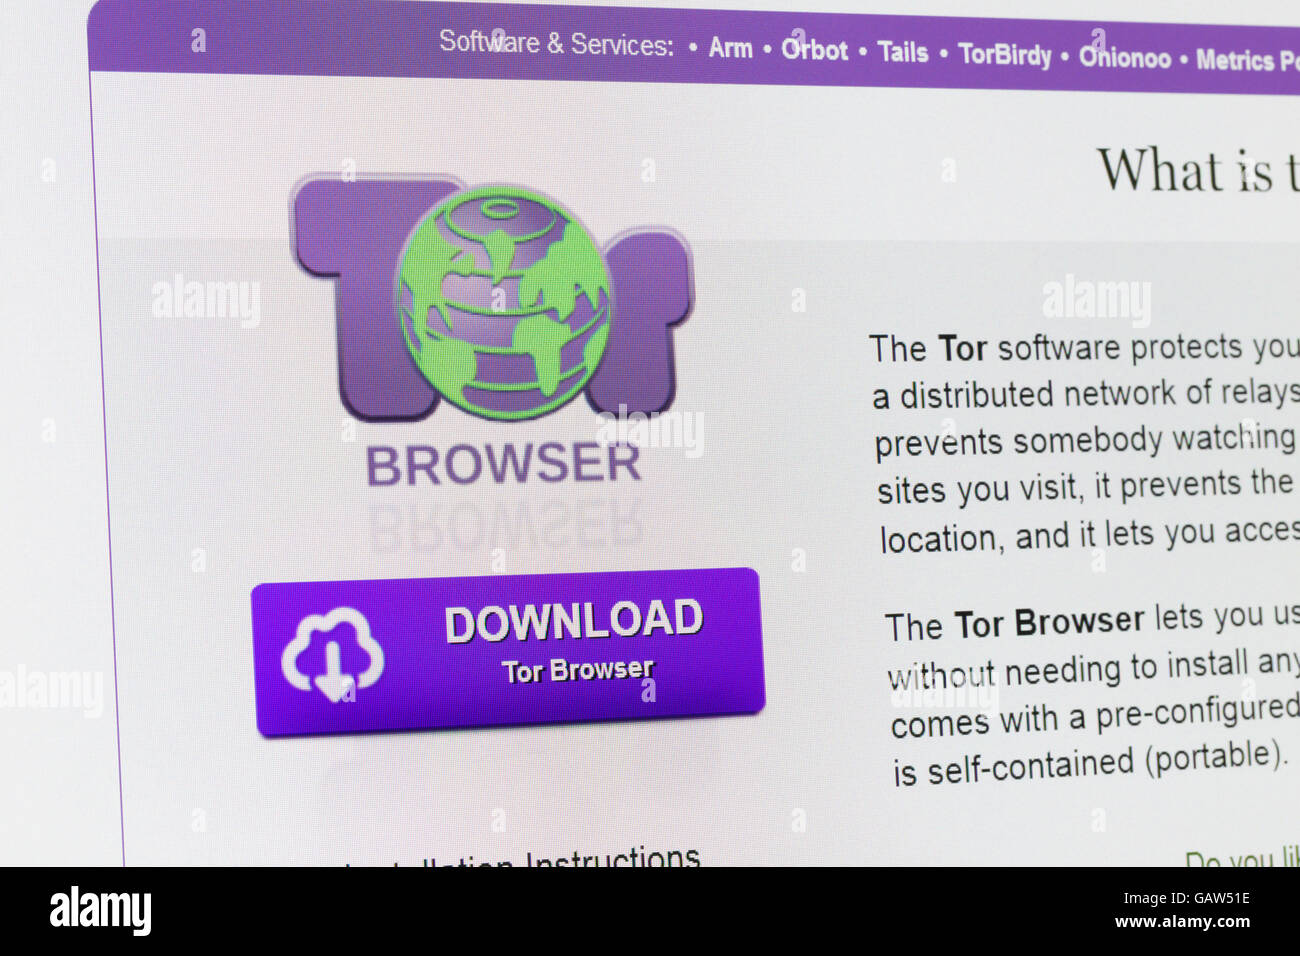 Tor browser картинки мега скачать тор браузер для симбиан mega